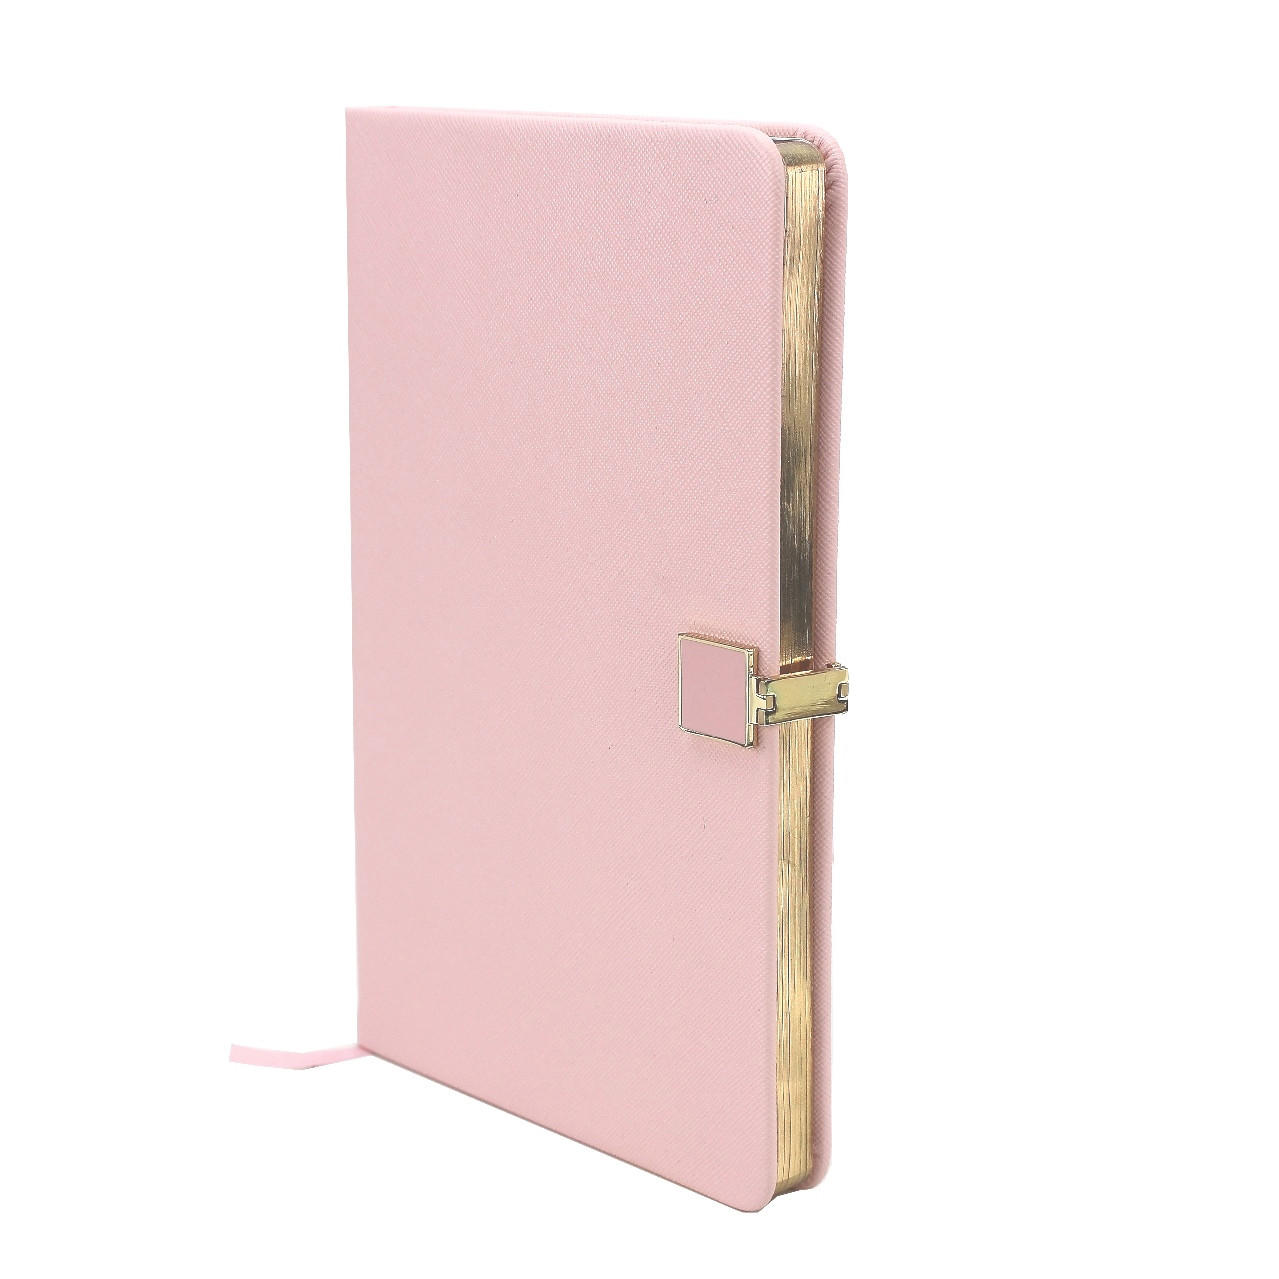 Notebook A5 5x8"  Pink Gold